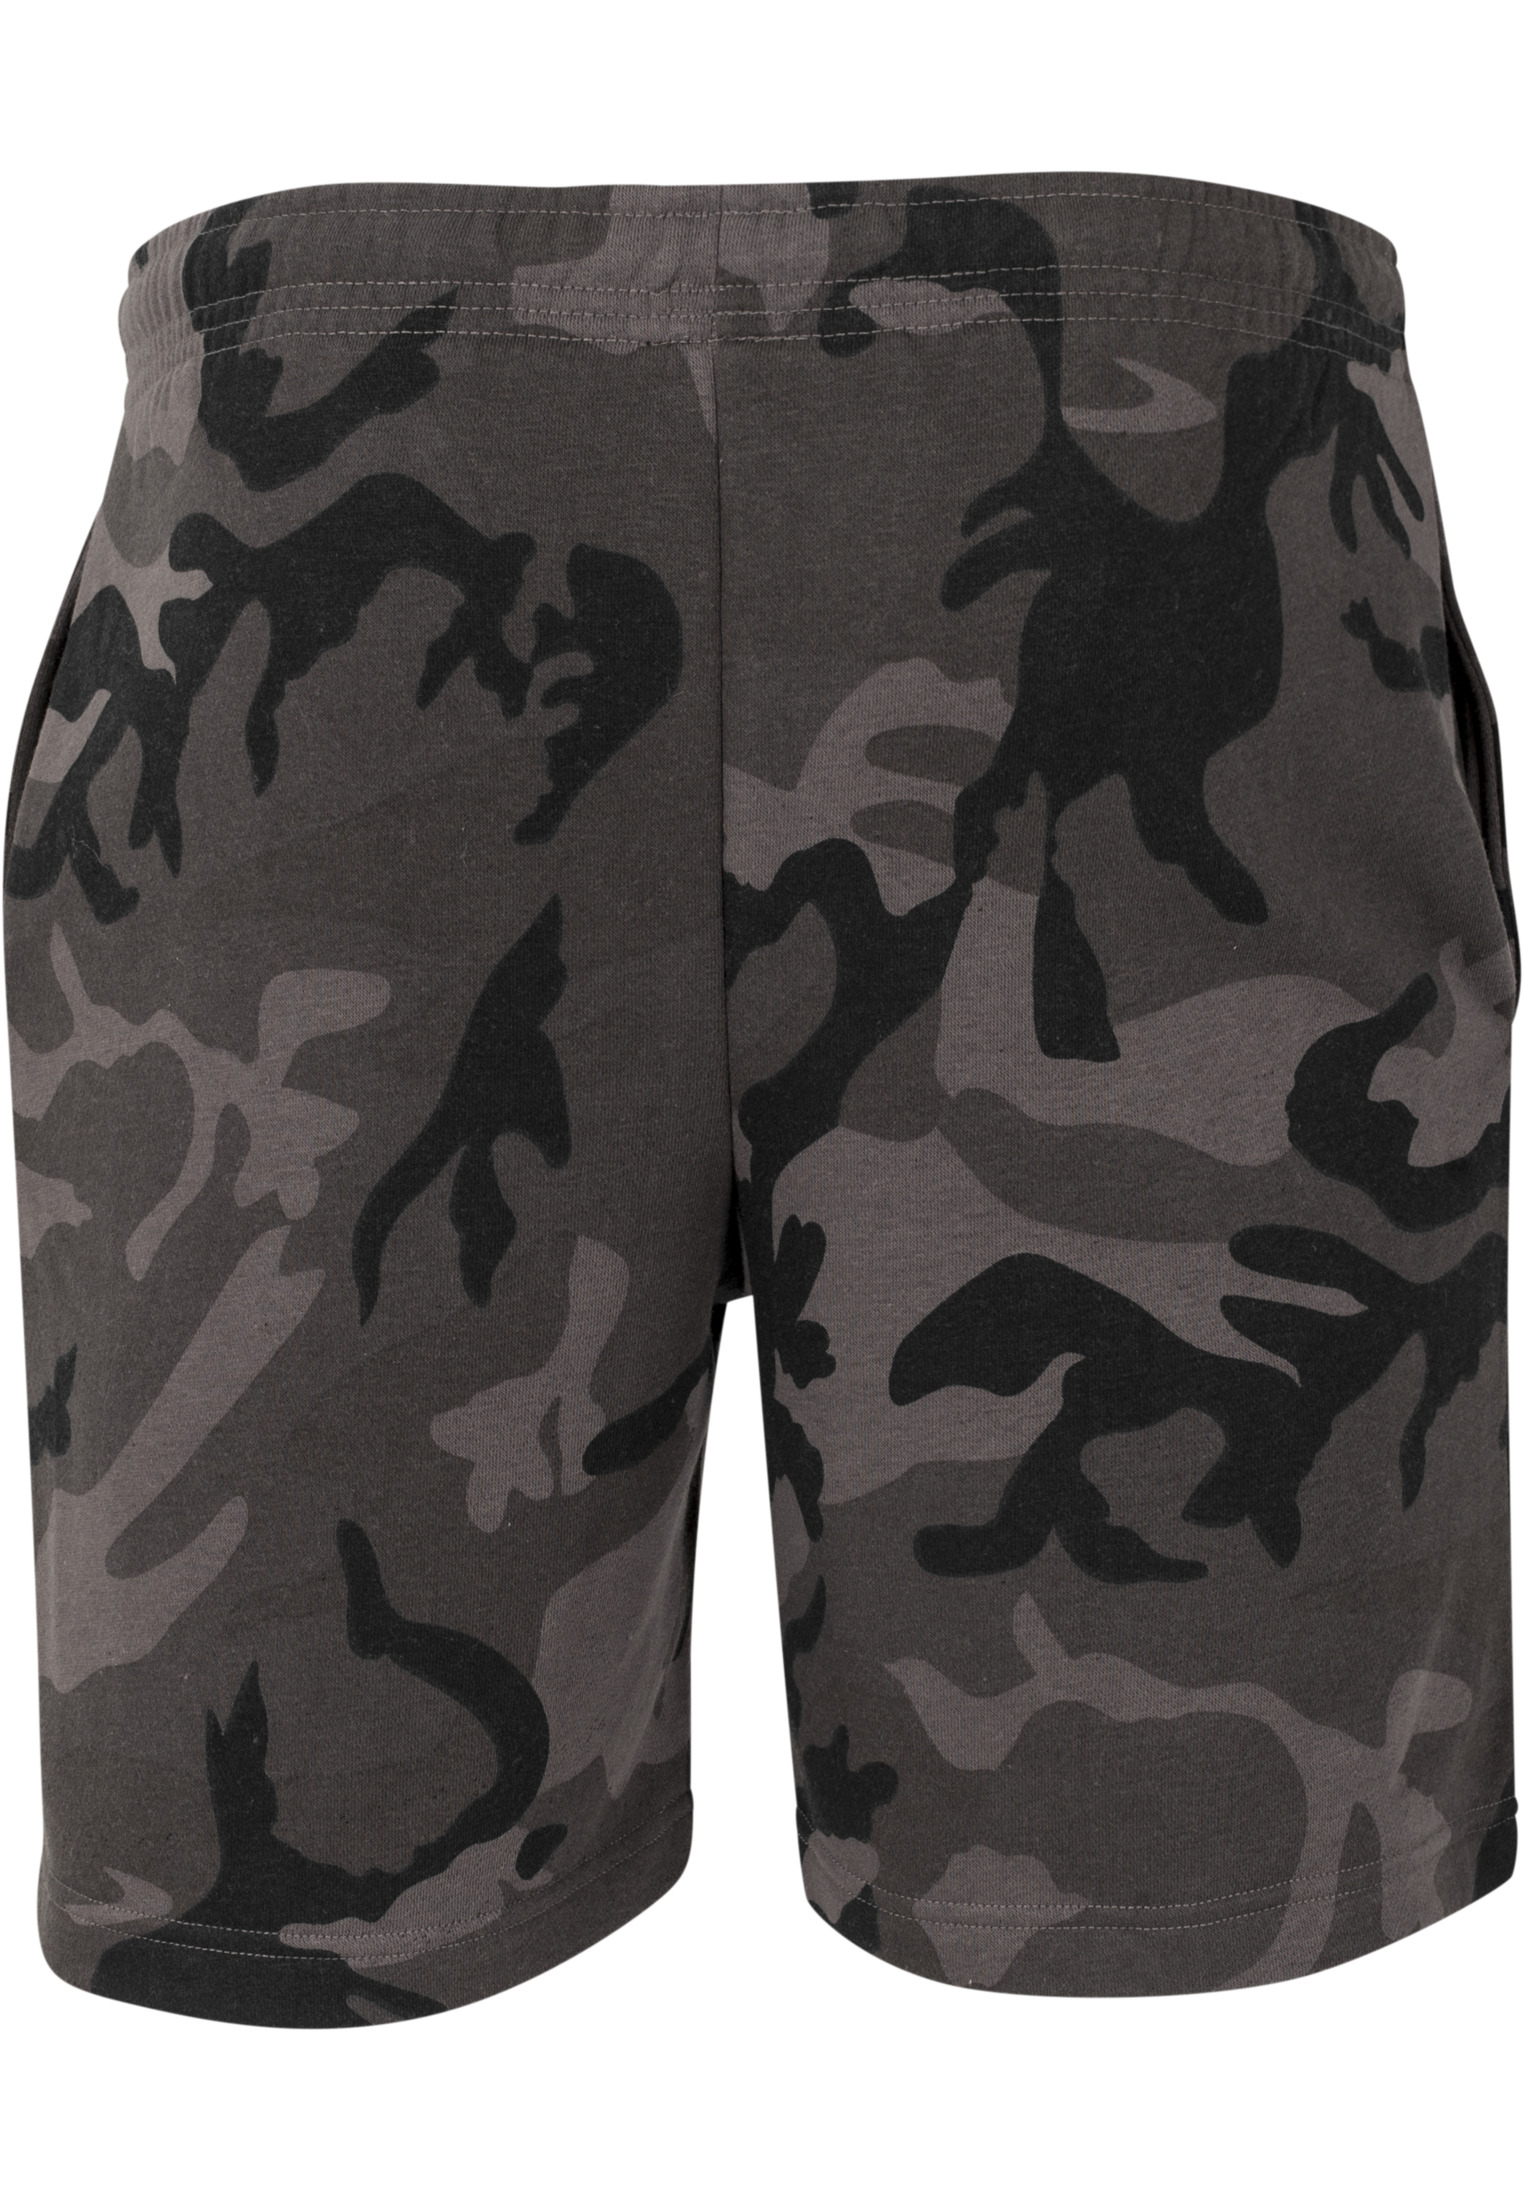 Kurze Hosen Basic Terry Shorts in Farbe dark camo